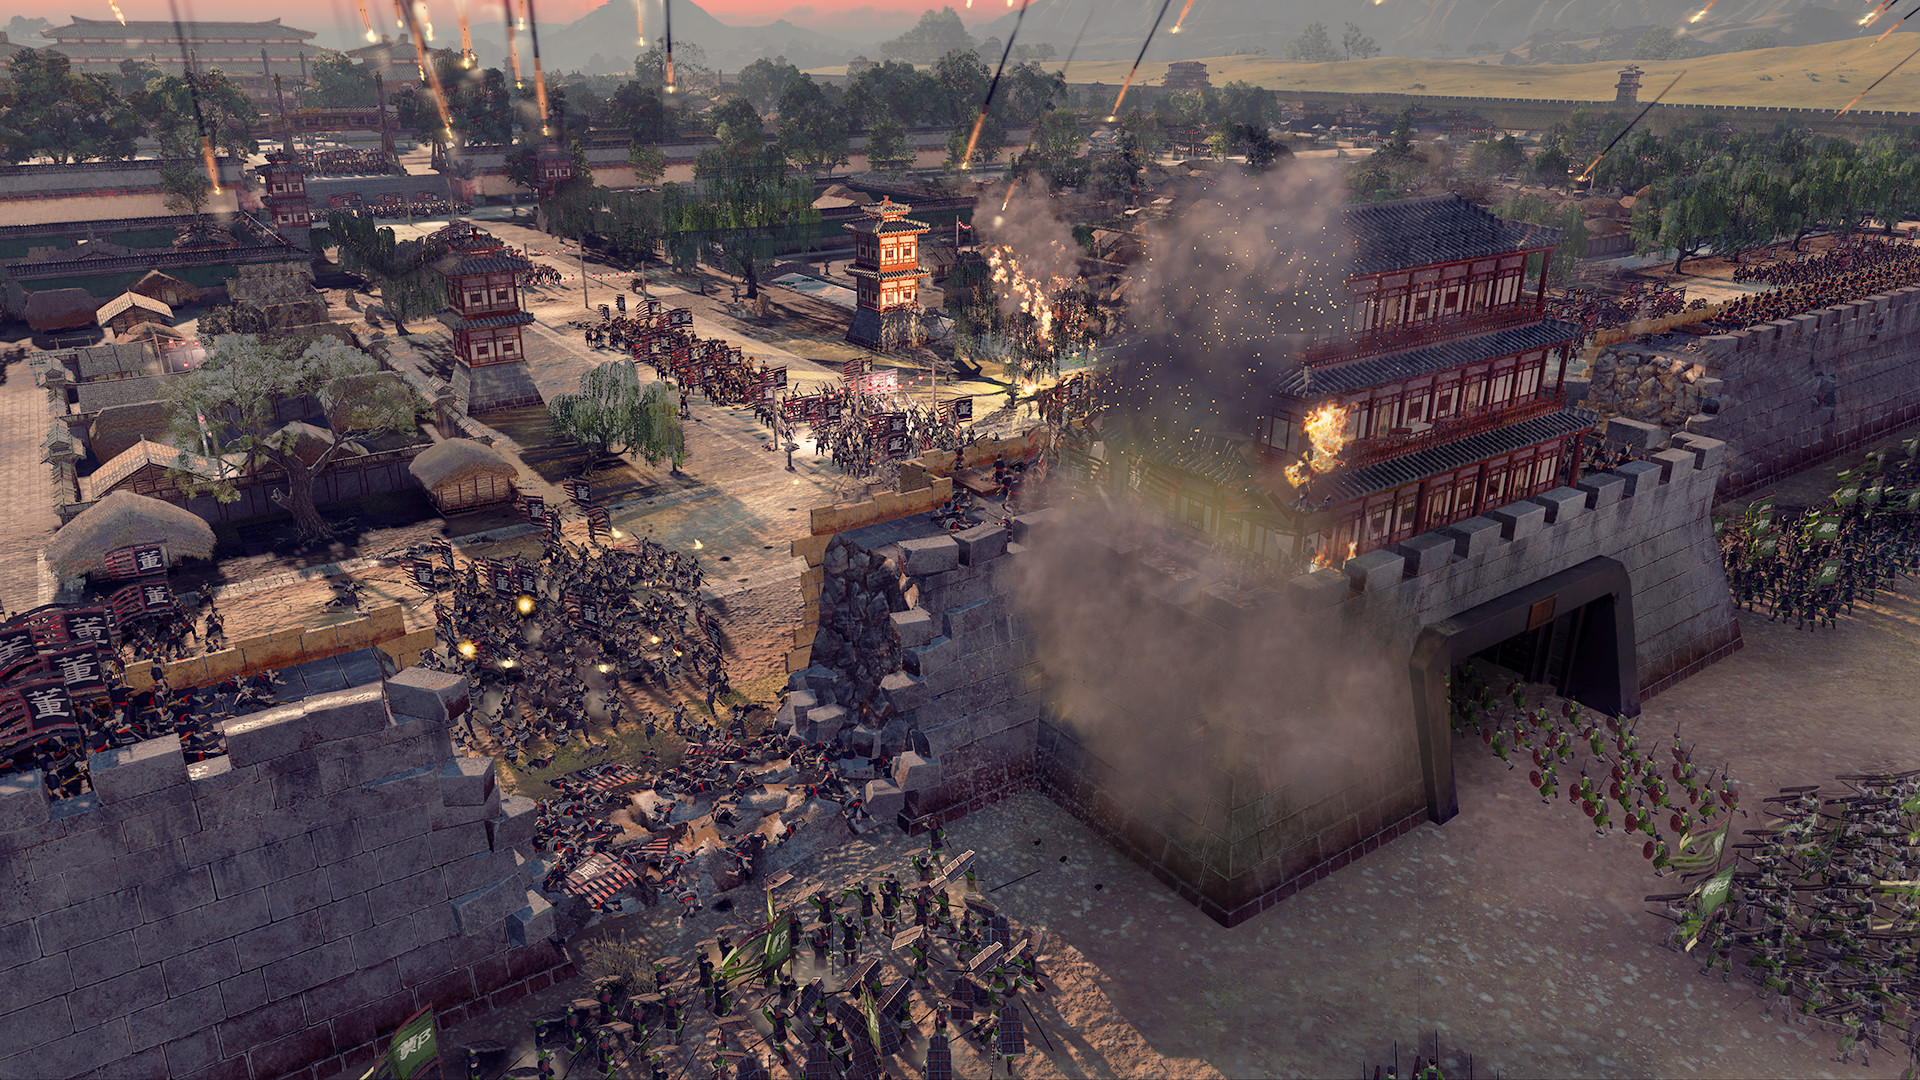 Total War: THREE KINGDOMS on Steam